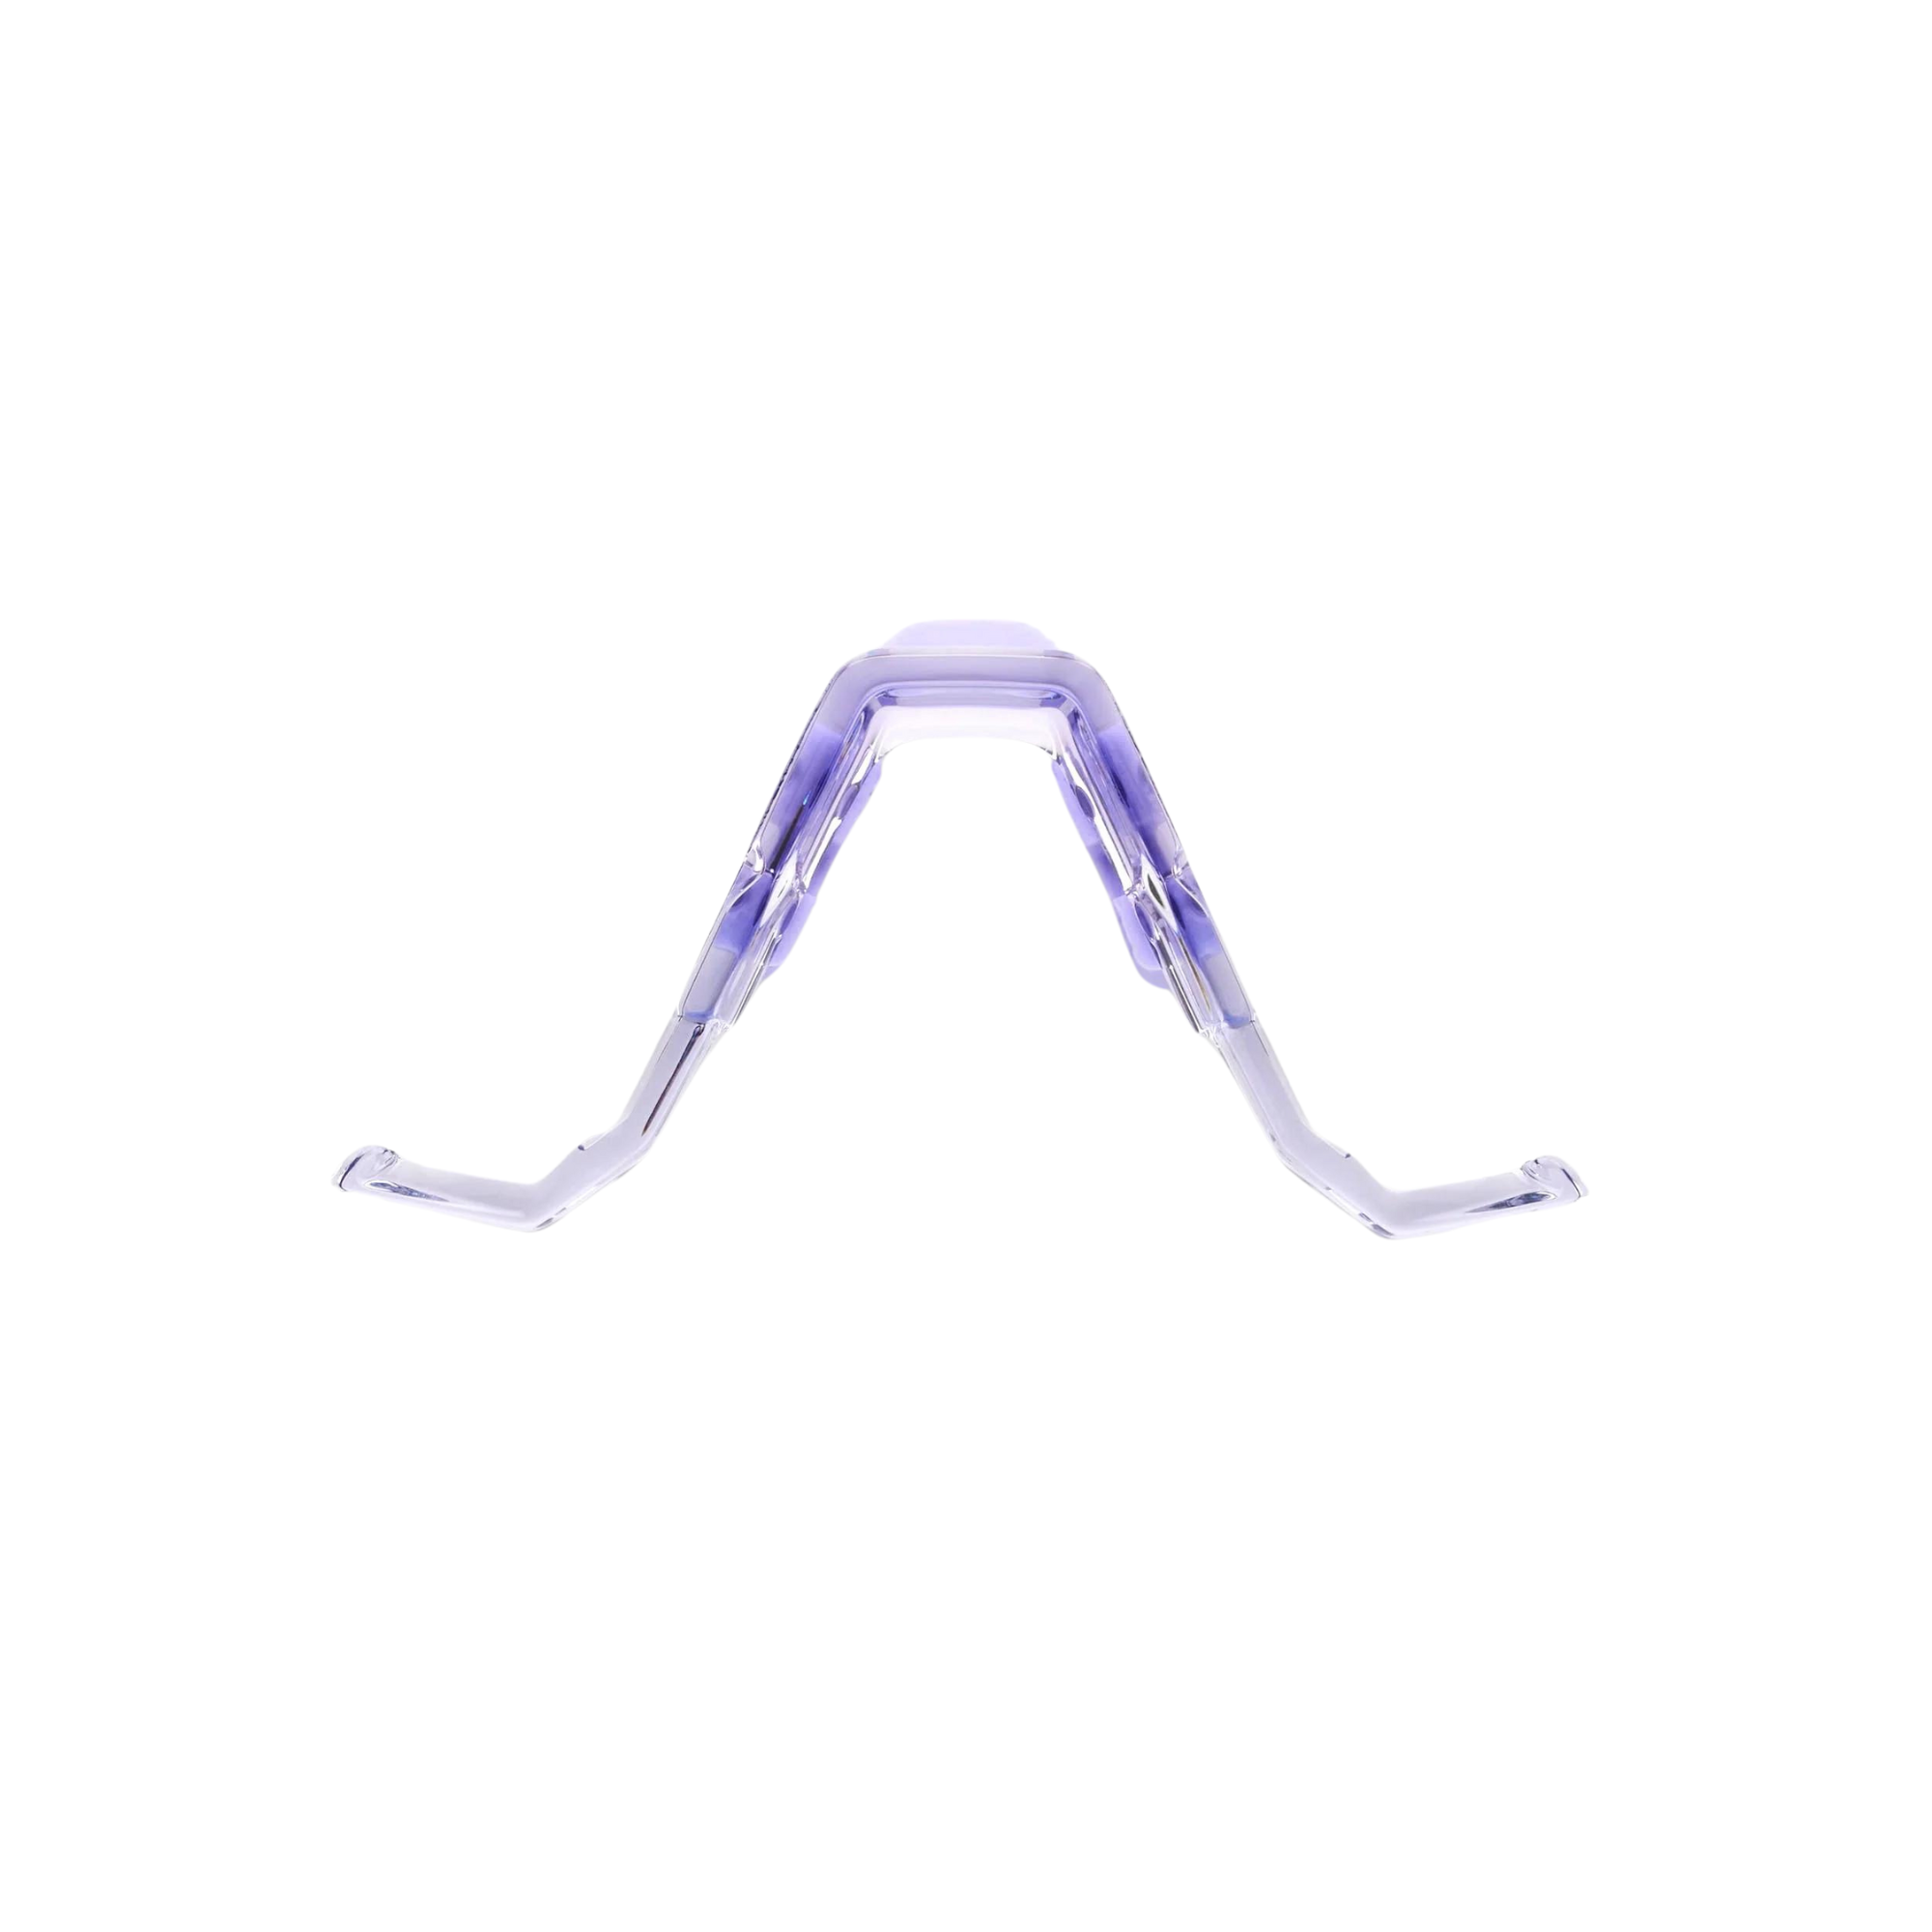 100% SPEEDCRAFT / S3 Nose Bridge Kit - Regular - Polished Translucent Lavender